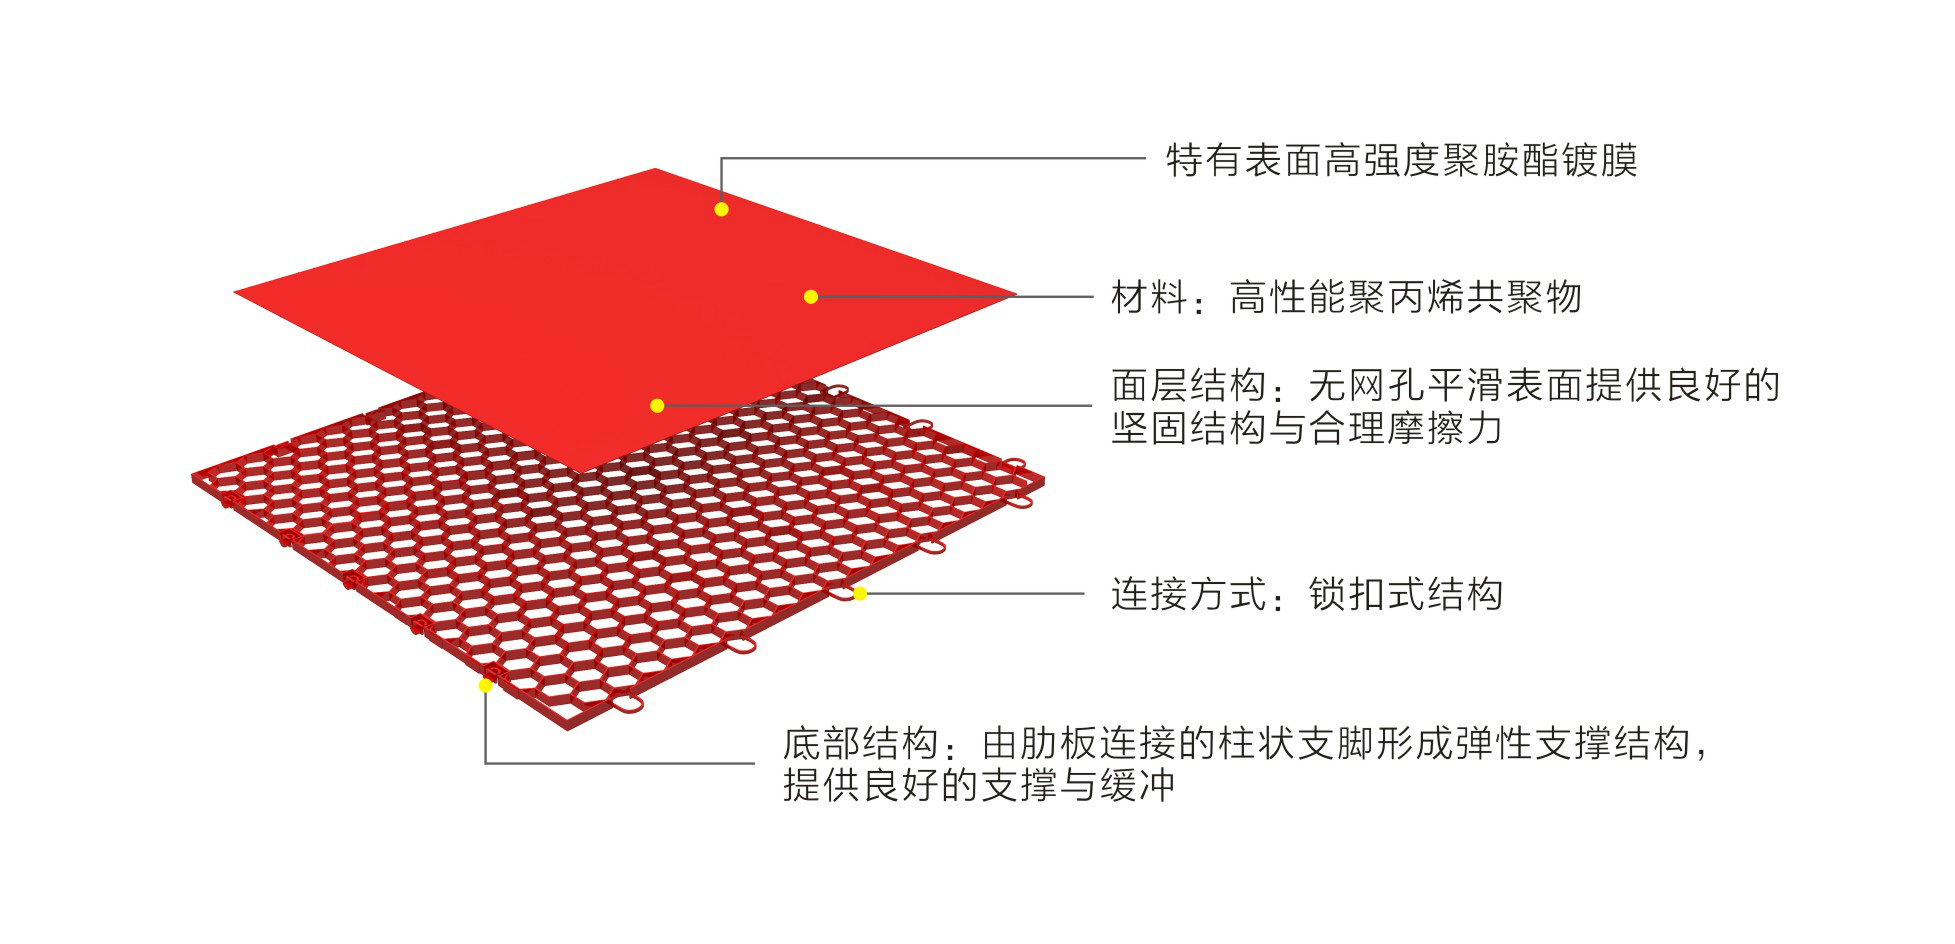 英利奥平板纹悬浮式拼装地板-结构图